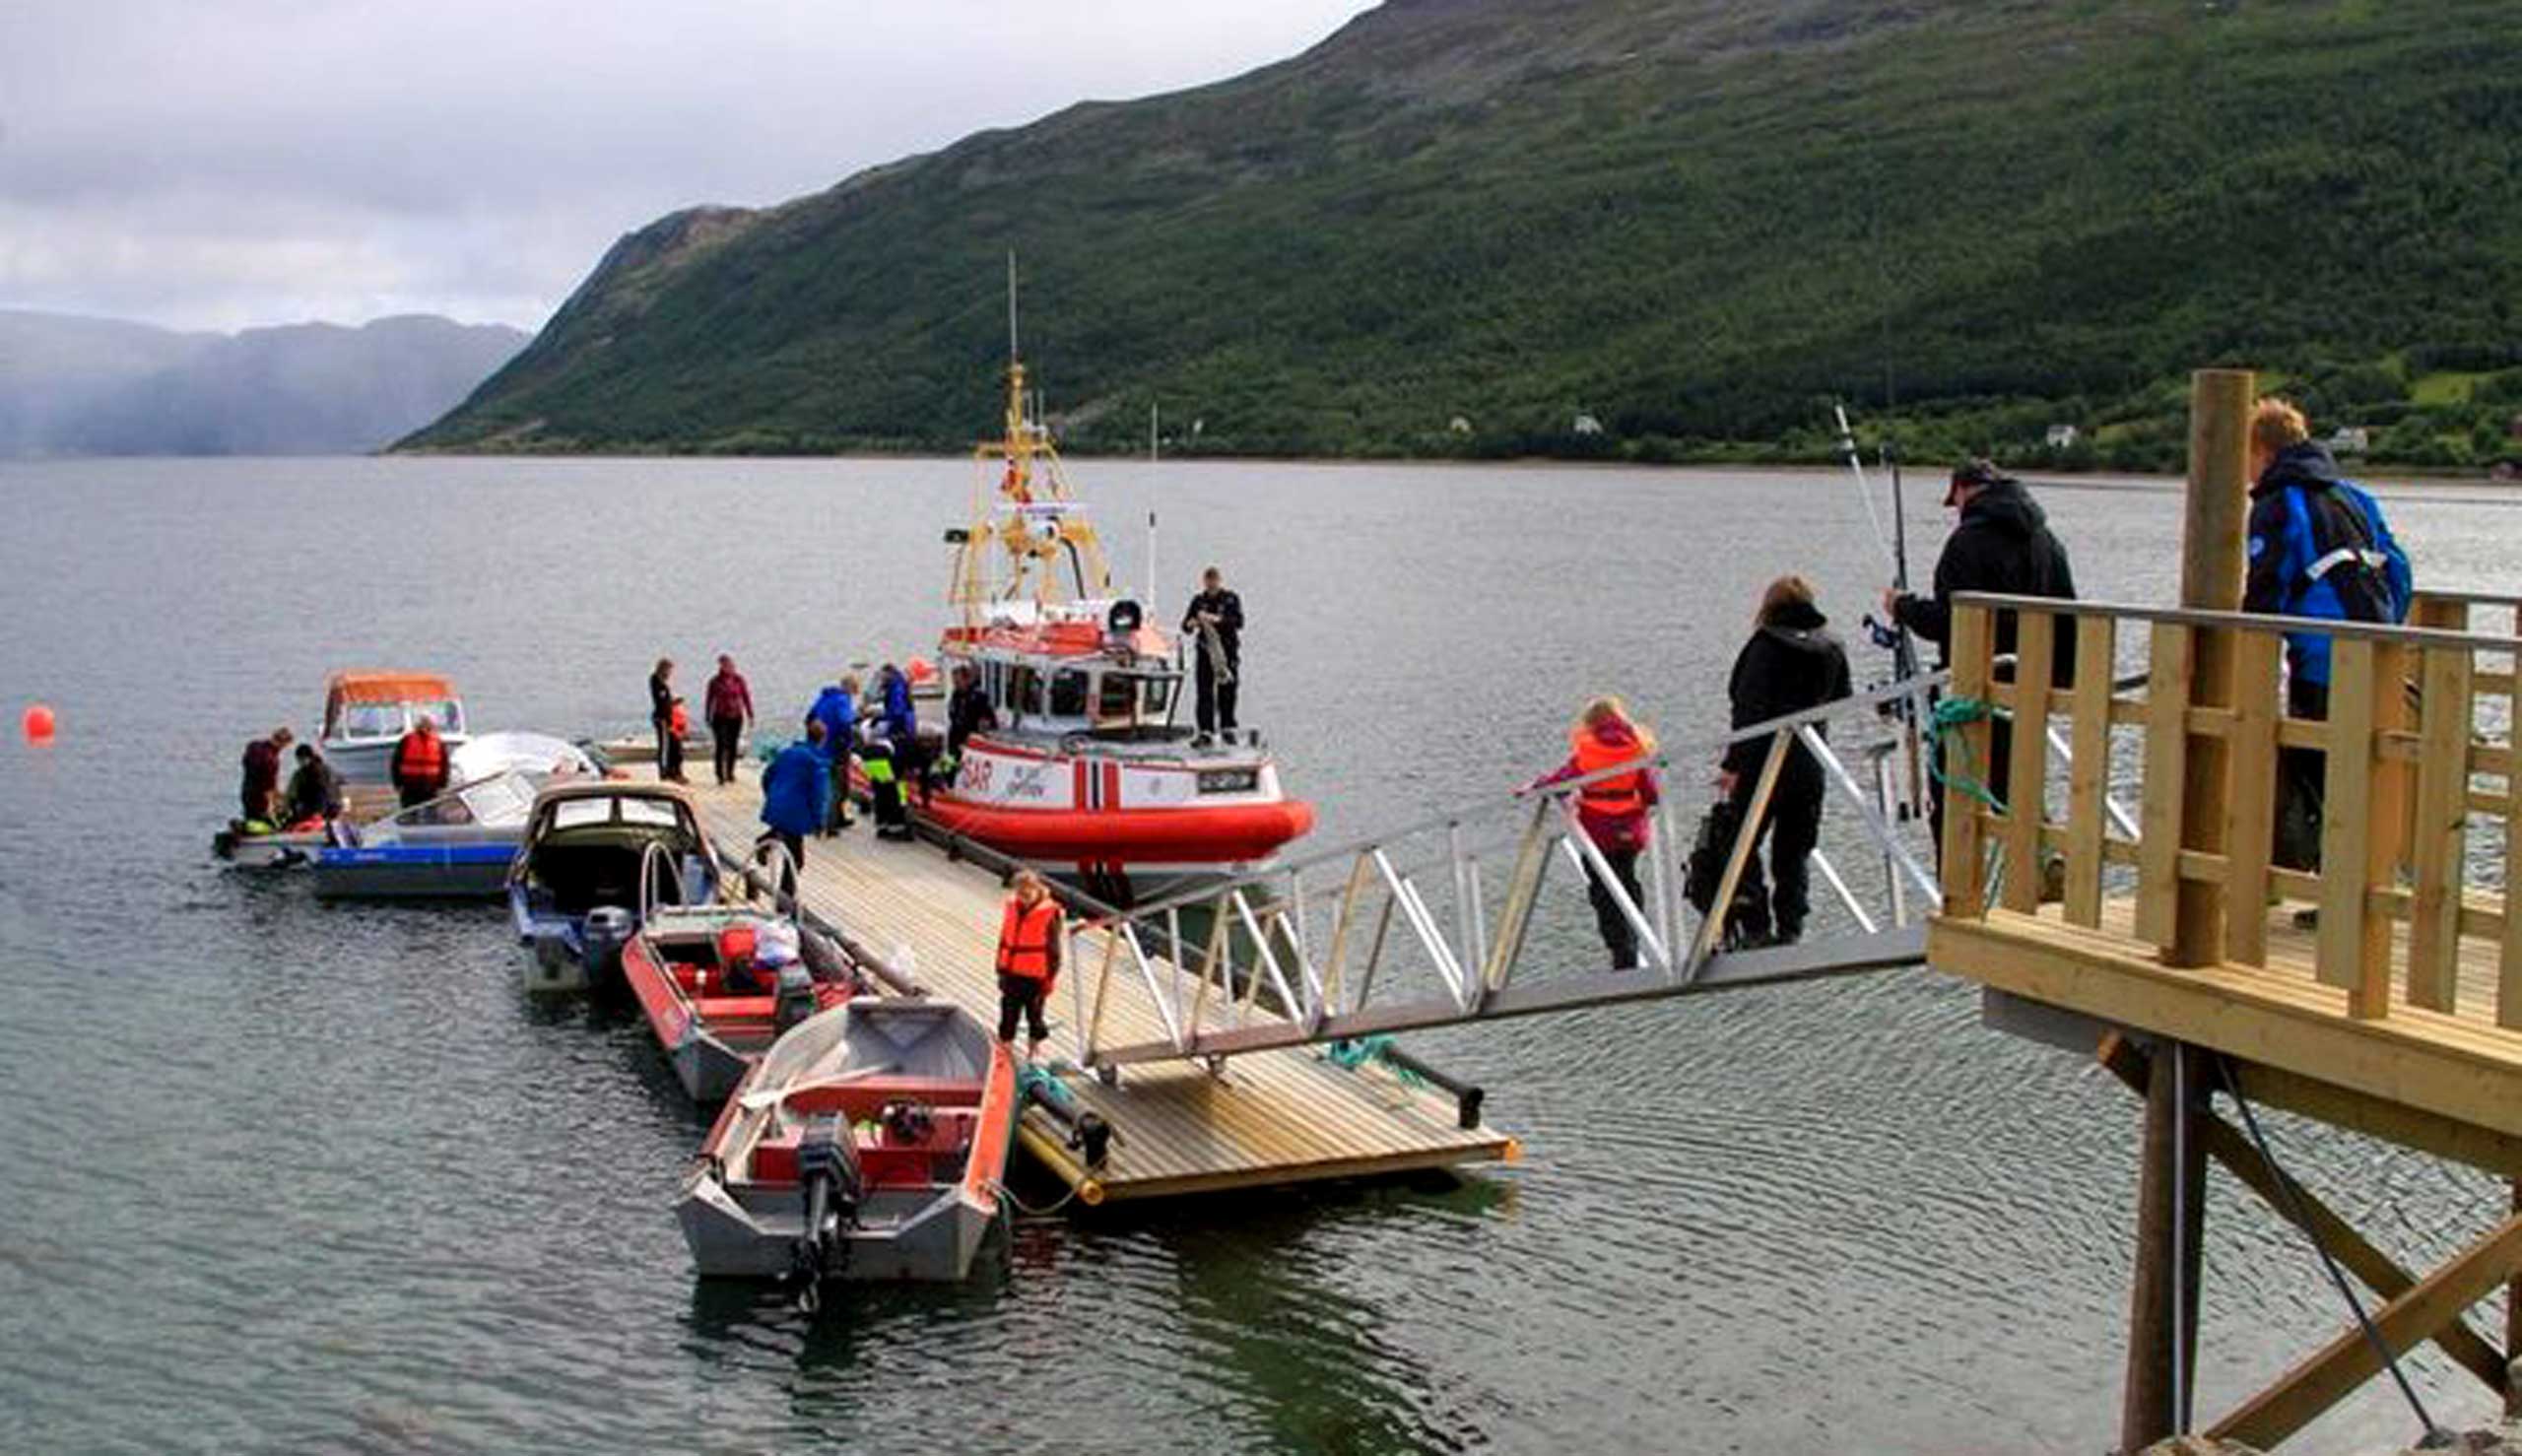 Altafjord Campingissa voi vuokrata erilaisia veneitä. Copyright: Altafjord Camping